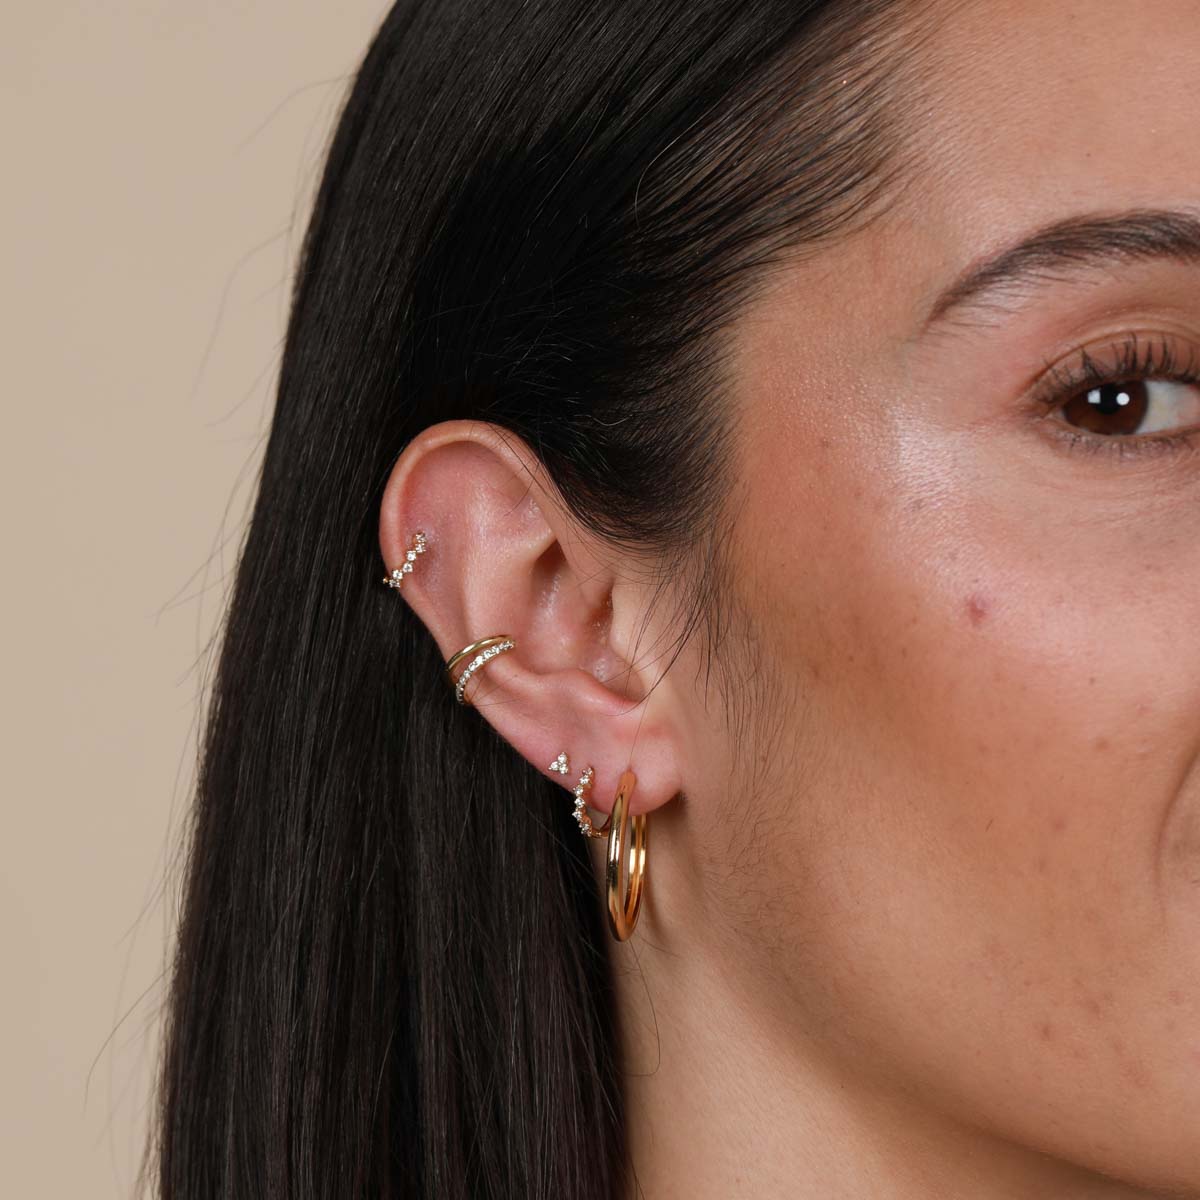 Upper Lobe and Ear Gold Cartilage Hoop Earring, Single Anti Tragus Helix  Piercing Accessories, Micro Huggie Hoops - Etsy | Cartilage earrings hoop, Gold  cartilage earrings, Cartilage hoop